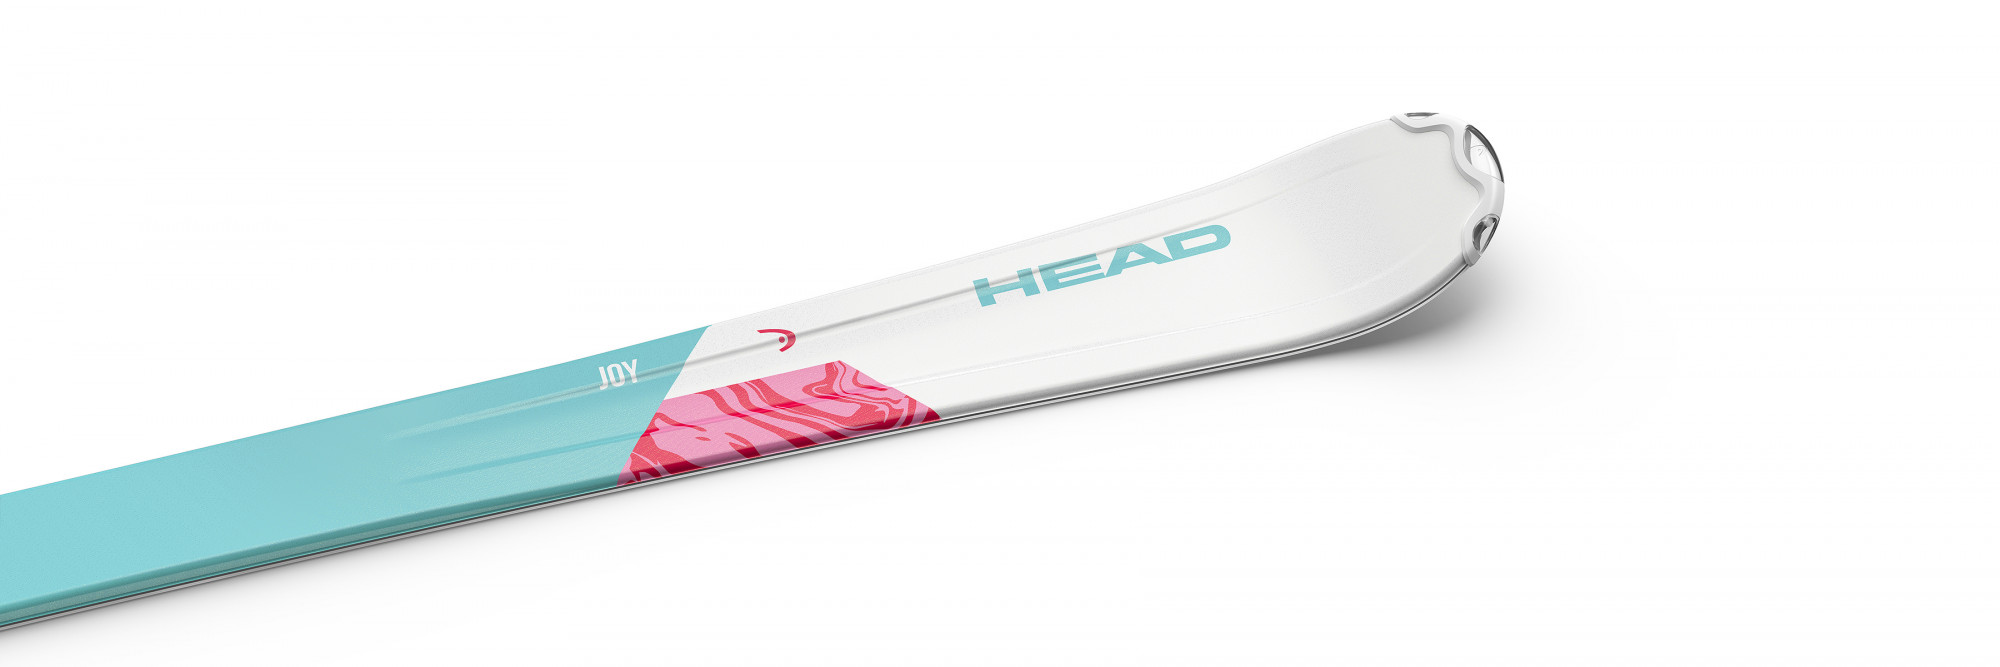 Горные лыжи Head Joy SLR Pro + SLR 4.5 2021 Mint/white, 117 см